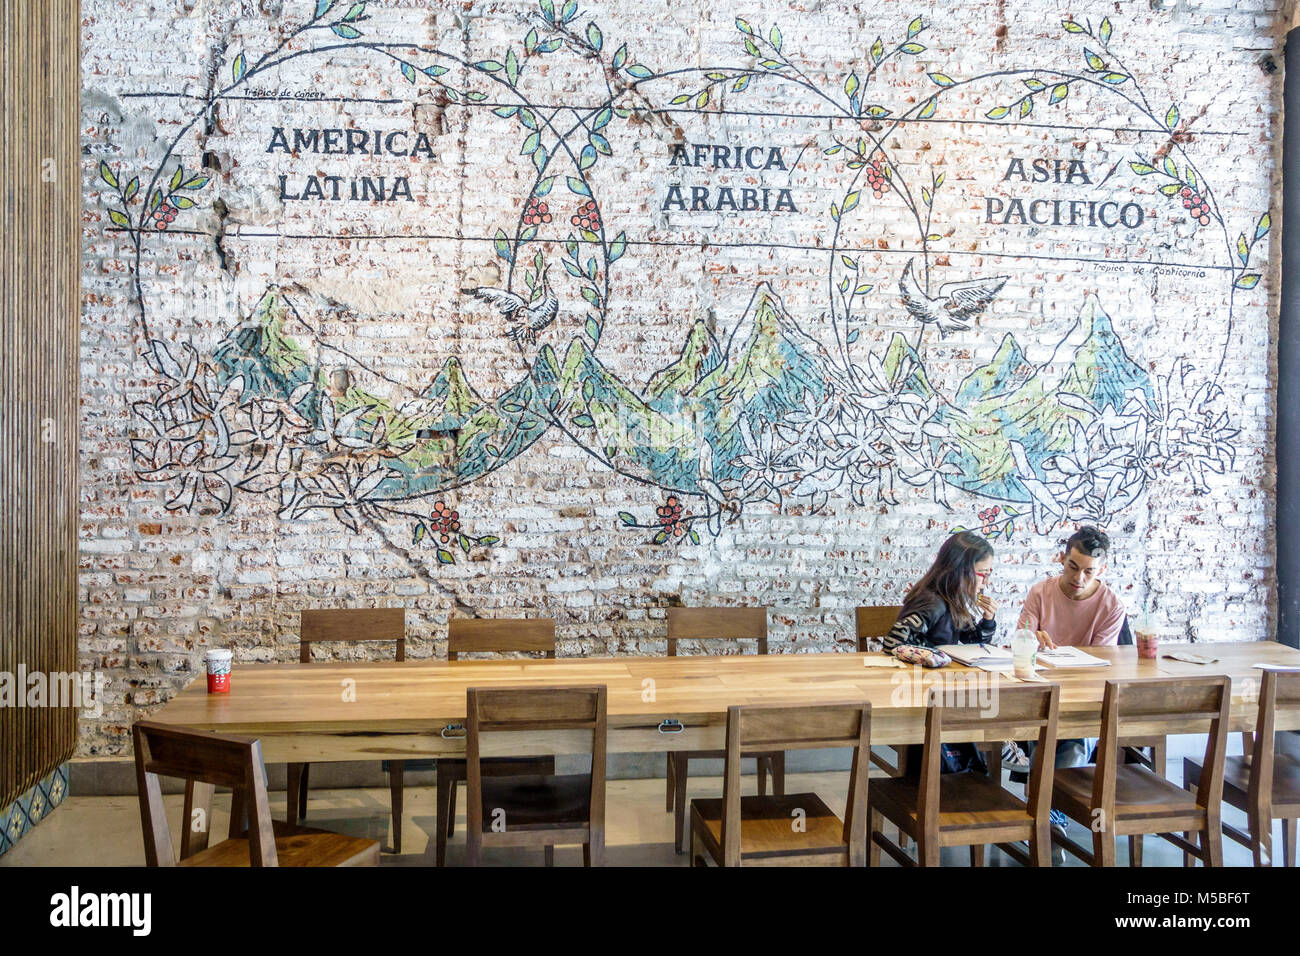 Buenos Aires Argentina, Galerias Pacifico, centro commerciale, interno, Starbucks Coffee, caffetteria, murales parete, mattoni a vista, tavolo, uomo uomini maschio, w Foto Stock